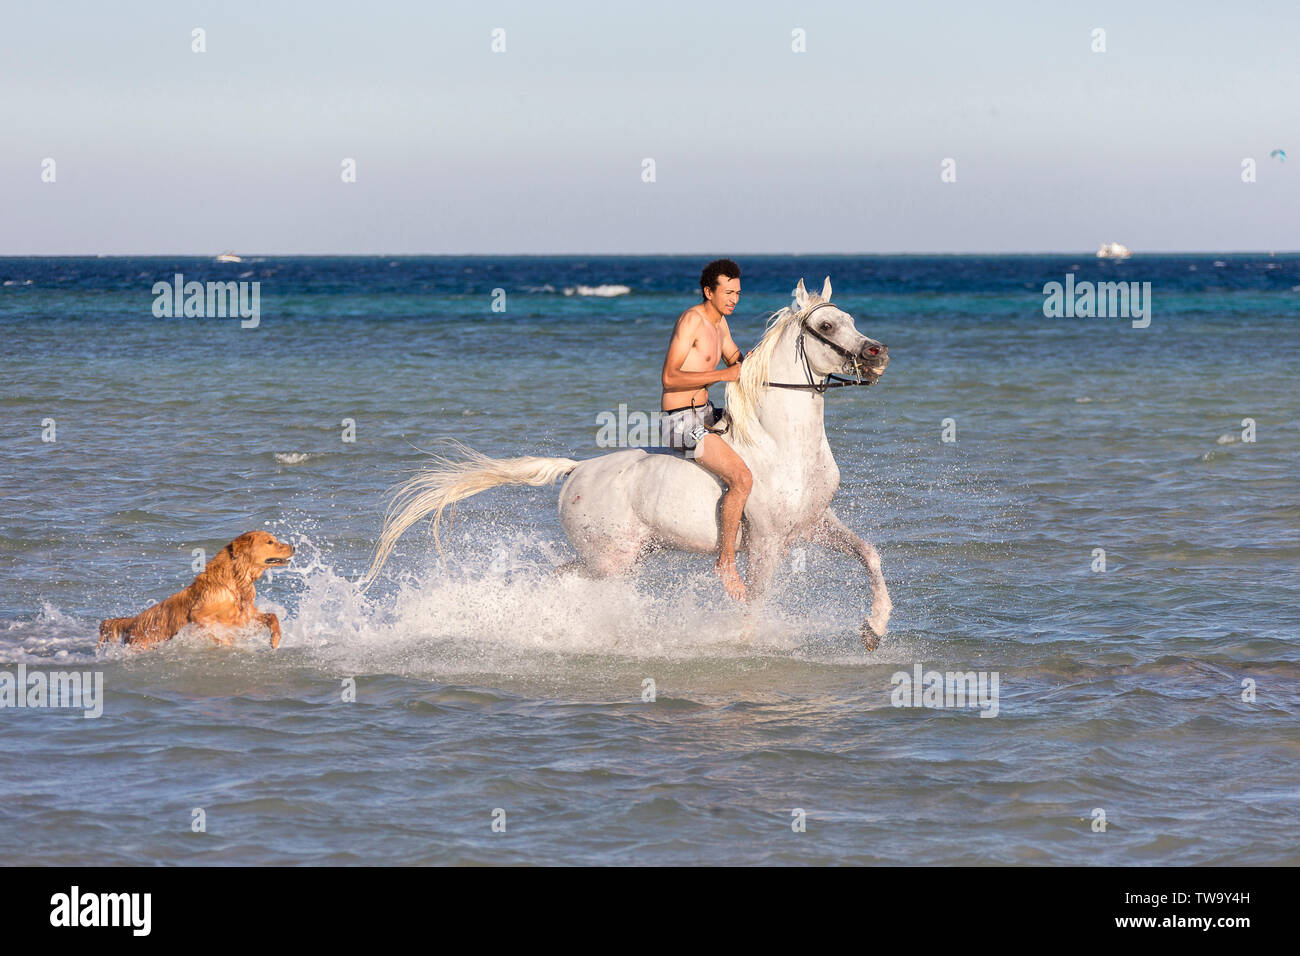 Arabische Pferd. Reiter ein schimmelhengst im Meer trotten, begleitet von einem Golden Retriver. Ägypten Stockfoto